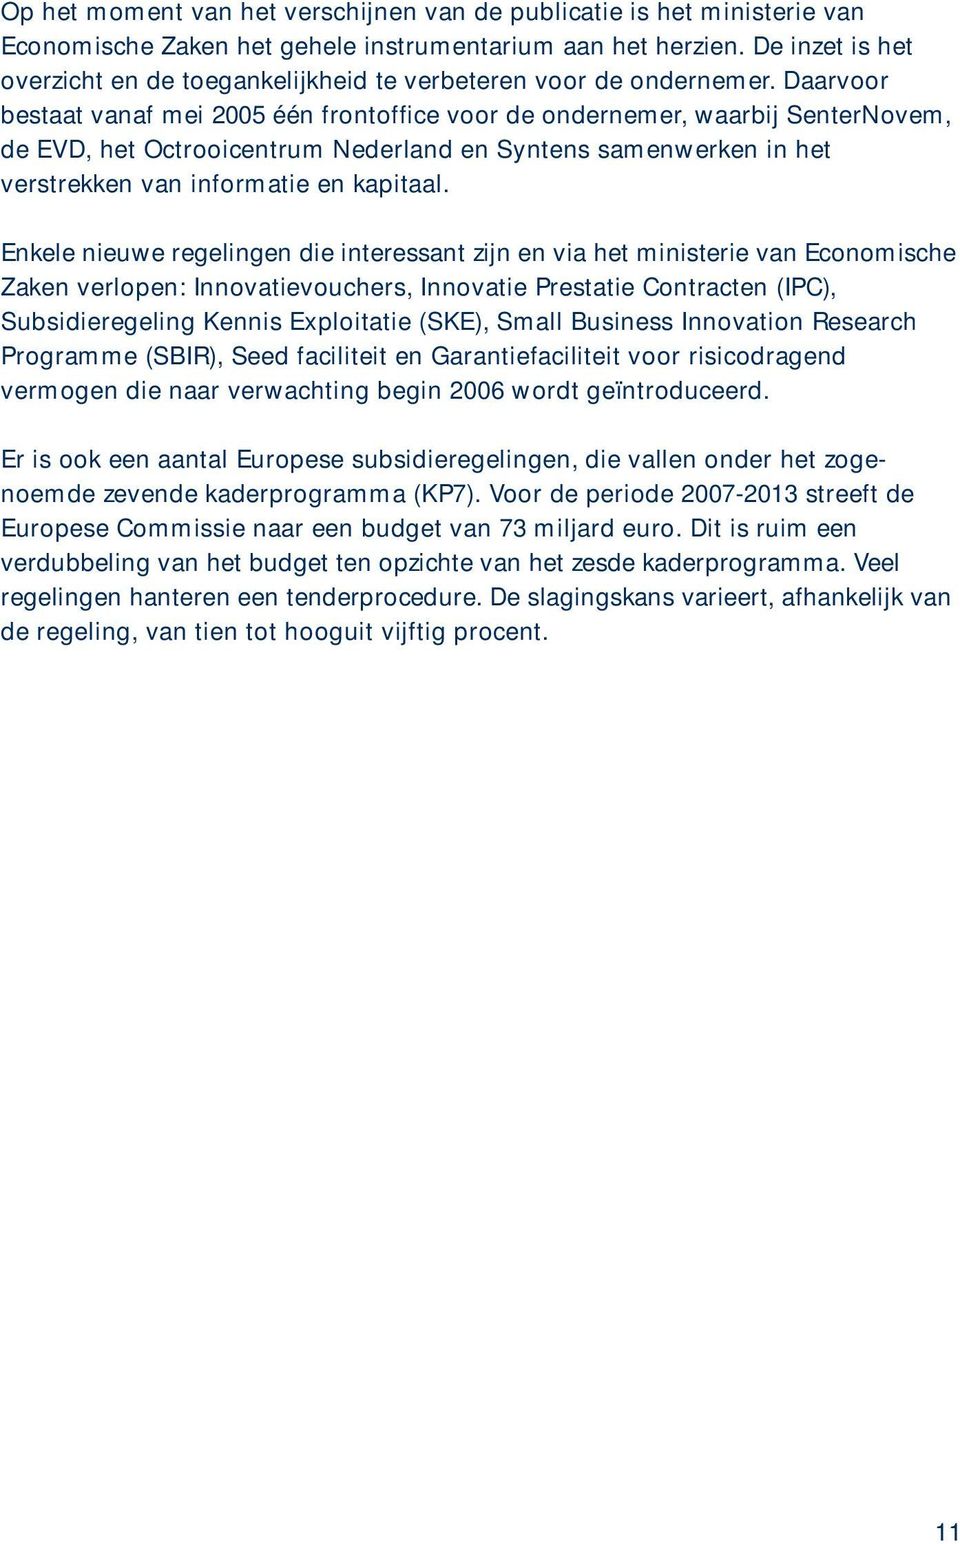 Daarvoor bestaat vanaf mei 2005 één frontoffice voor de ondernemer, waarbij SenterNovem, de EVD, het Octrooicentrum Nederland en Syntens samenwerken in het verstrekken van informatie en kapitaal.